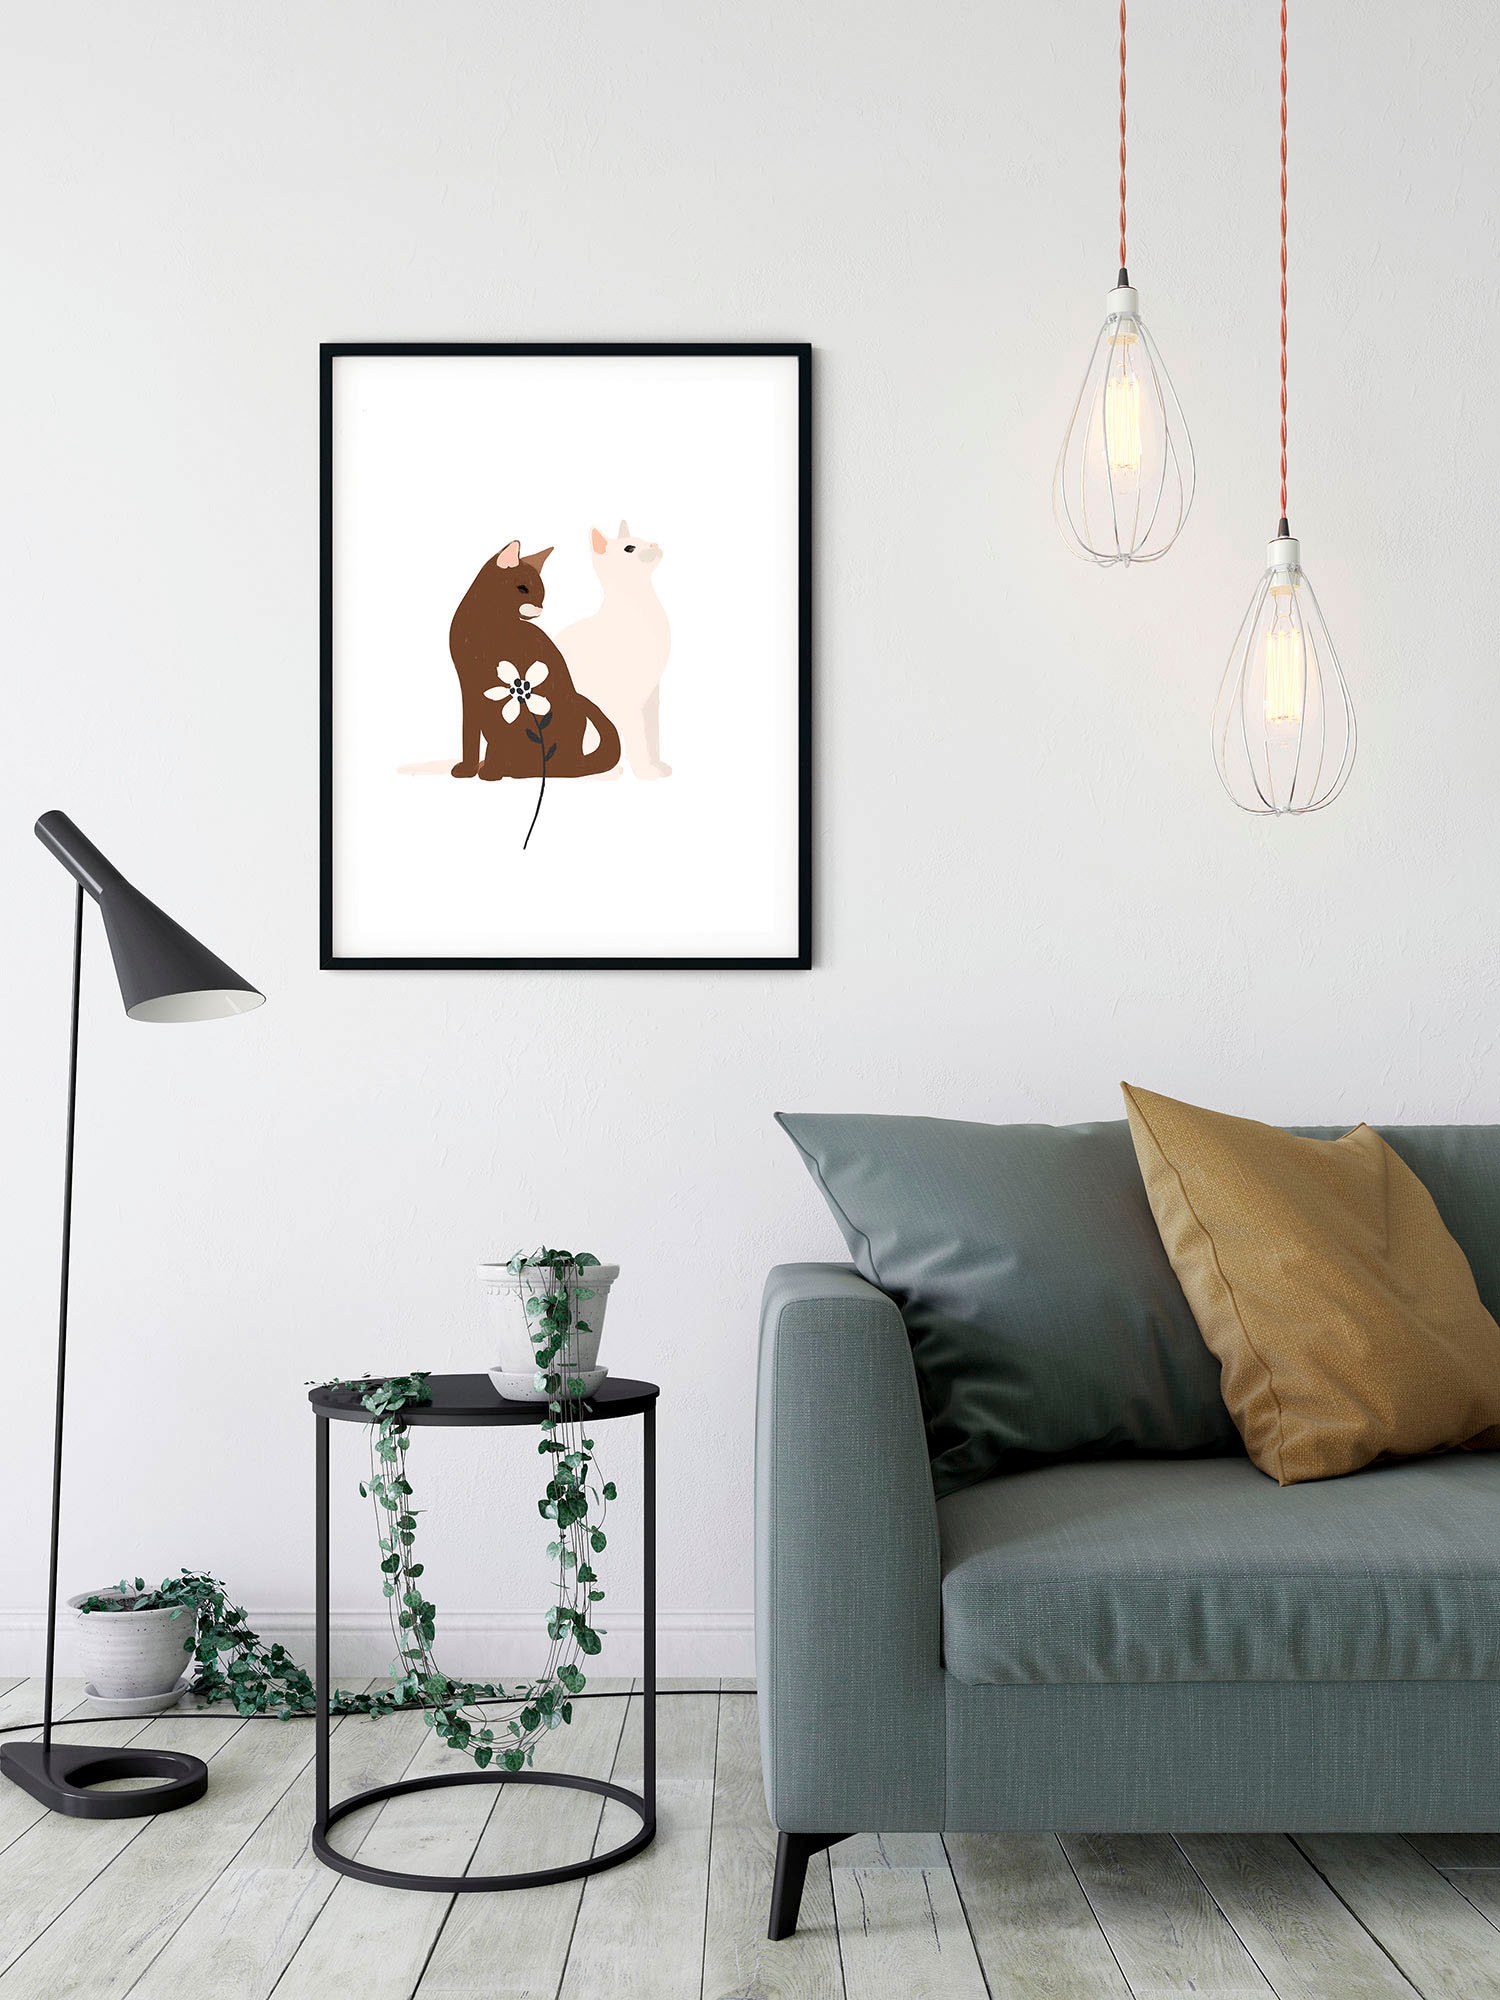 Komar Wandbild »Loving Cats«, (1 St.), Deutsches Premium-Poster Fotopapier mit seidenmatter Oberfläche und hoher Lichtbeständigkeit. Für fotorealistische Drucke mit gestochen scharfen Details und hervorragender Farbbrillanz.